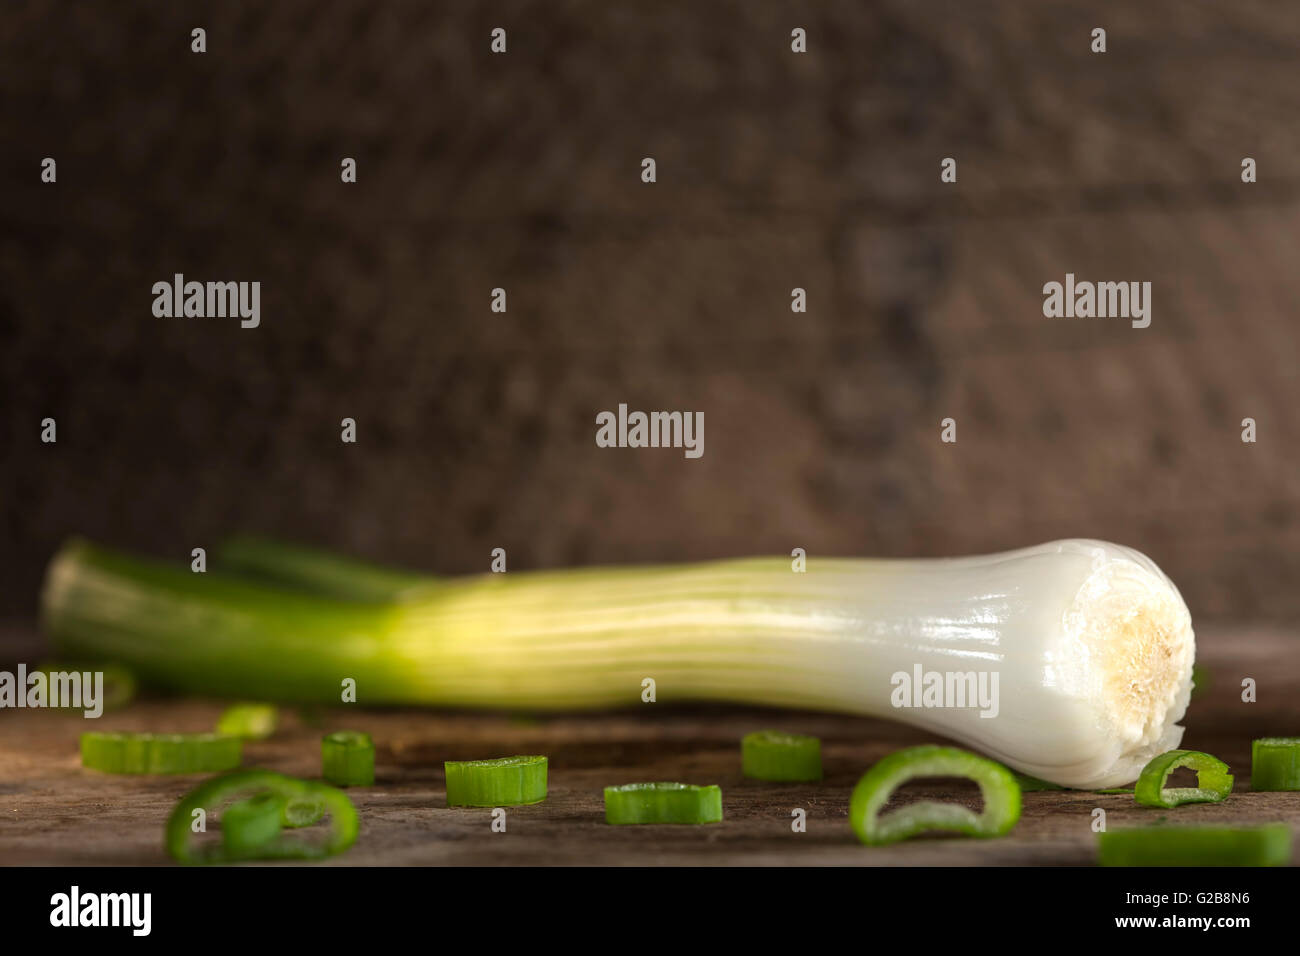 Una cebolleta, también conocida como ensalada de cebolla, cebolleta o cebollino sobre fondo de madera Foto de stock